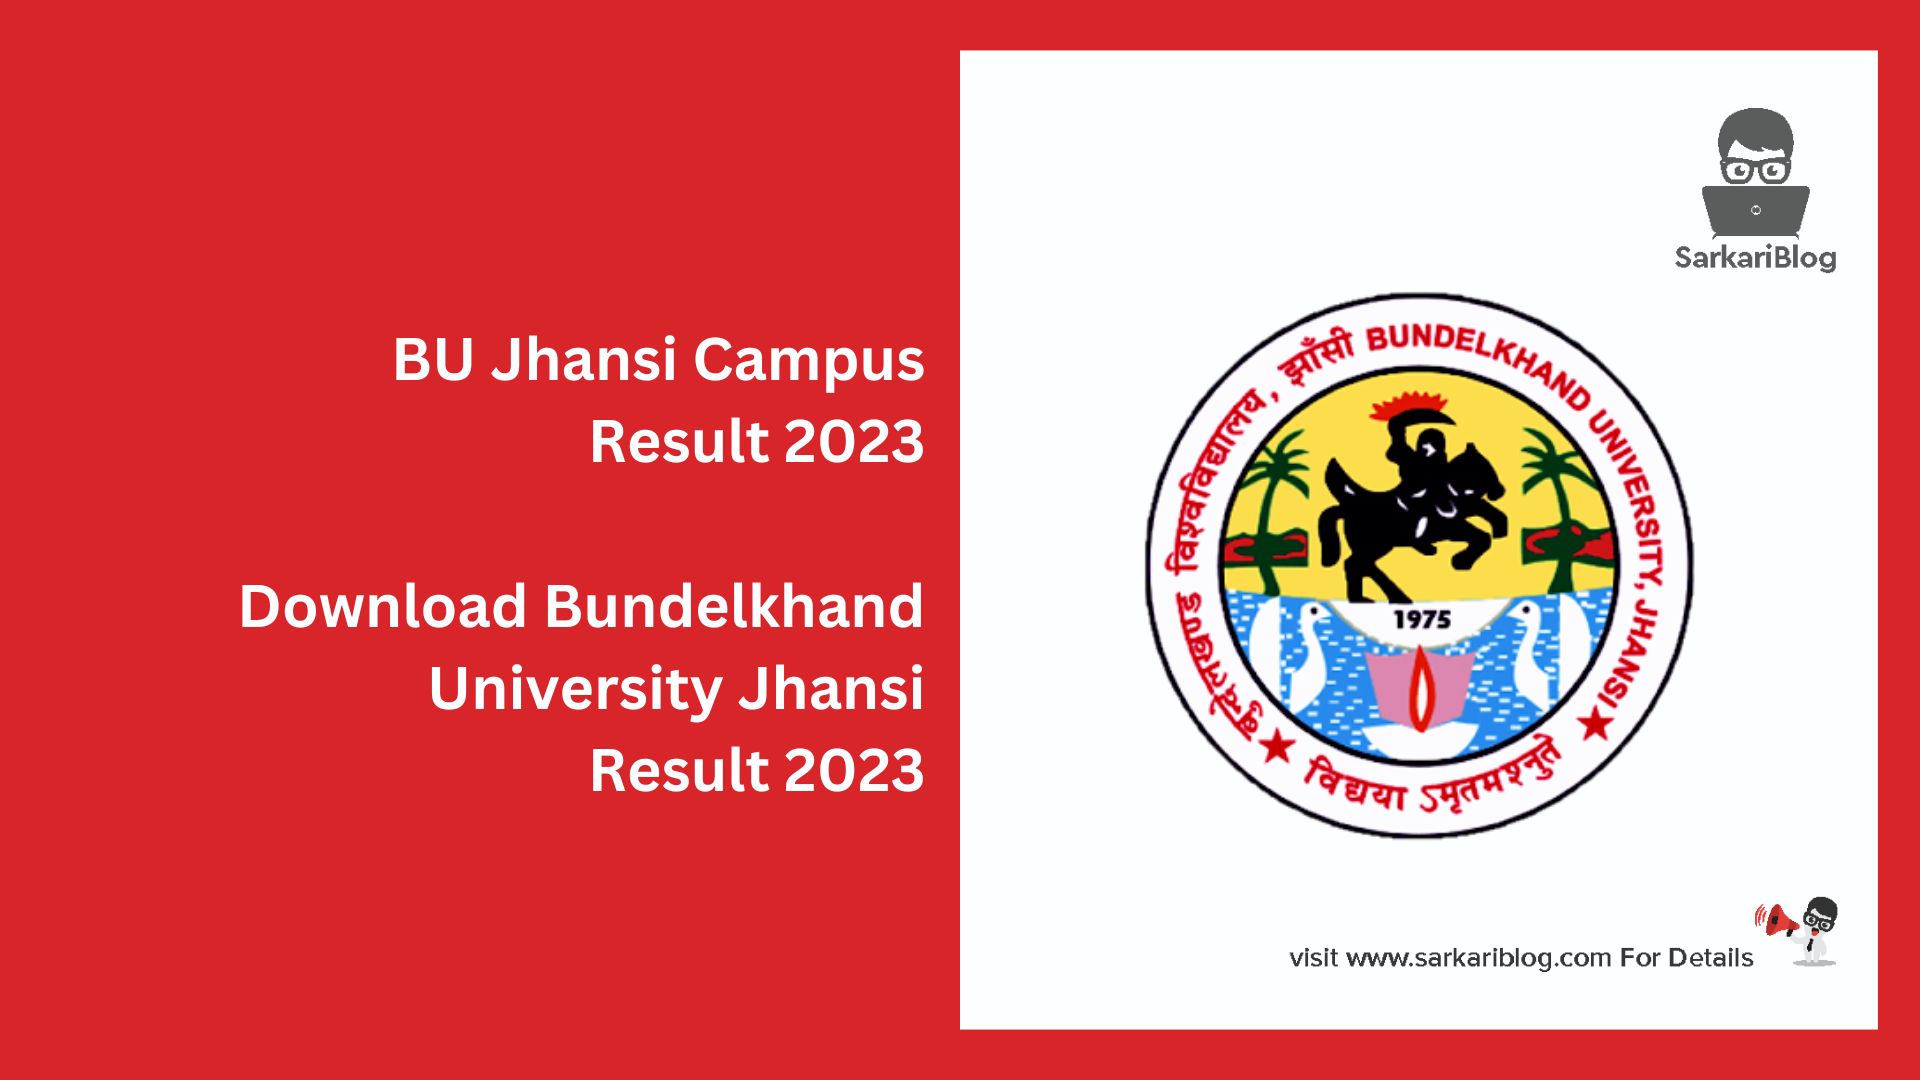 BU Jhansi Campus Result 2023